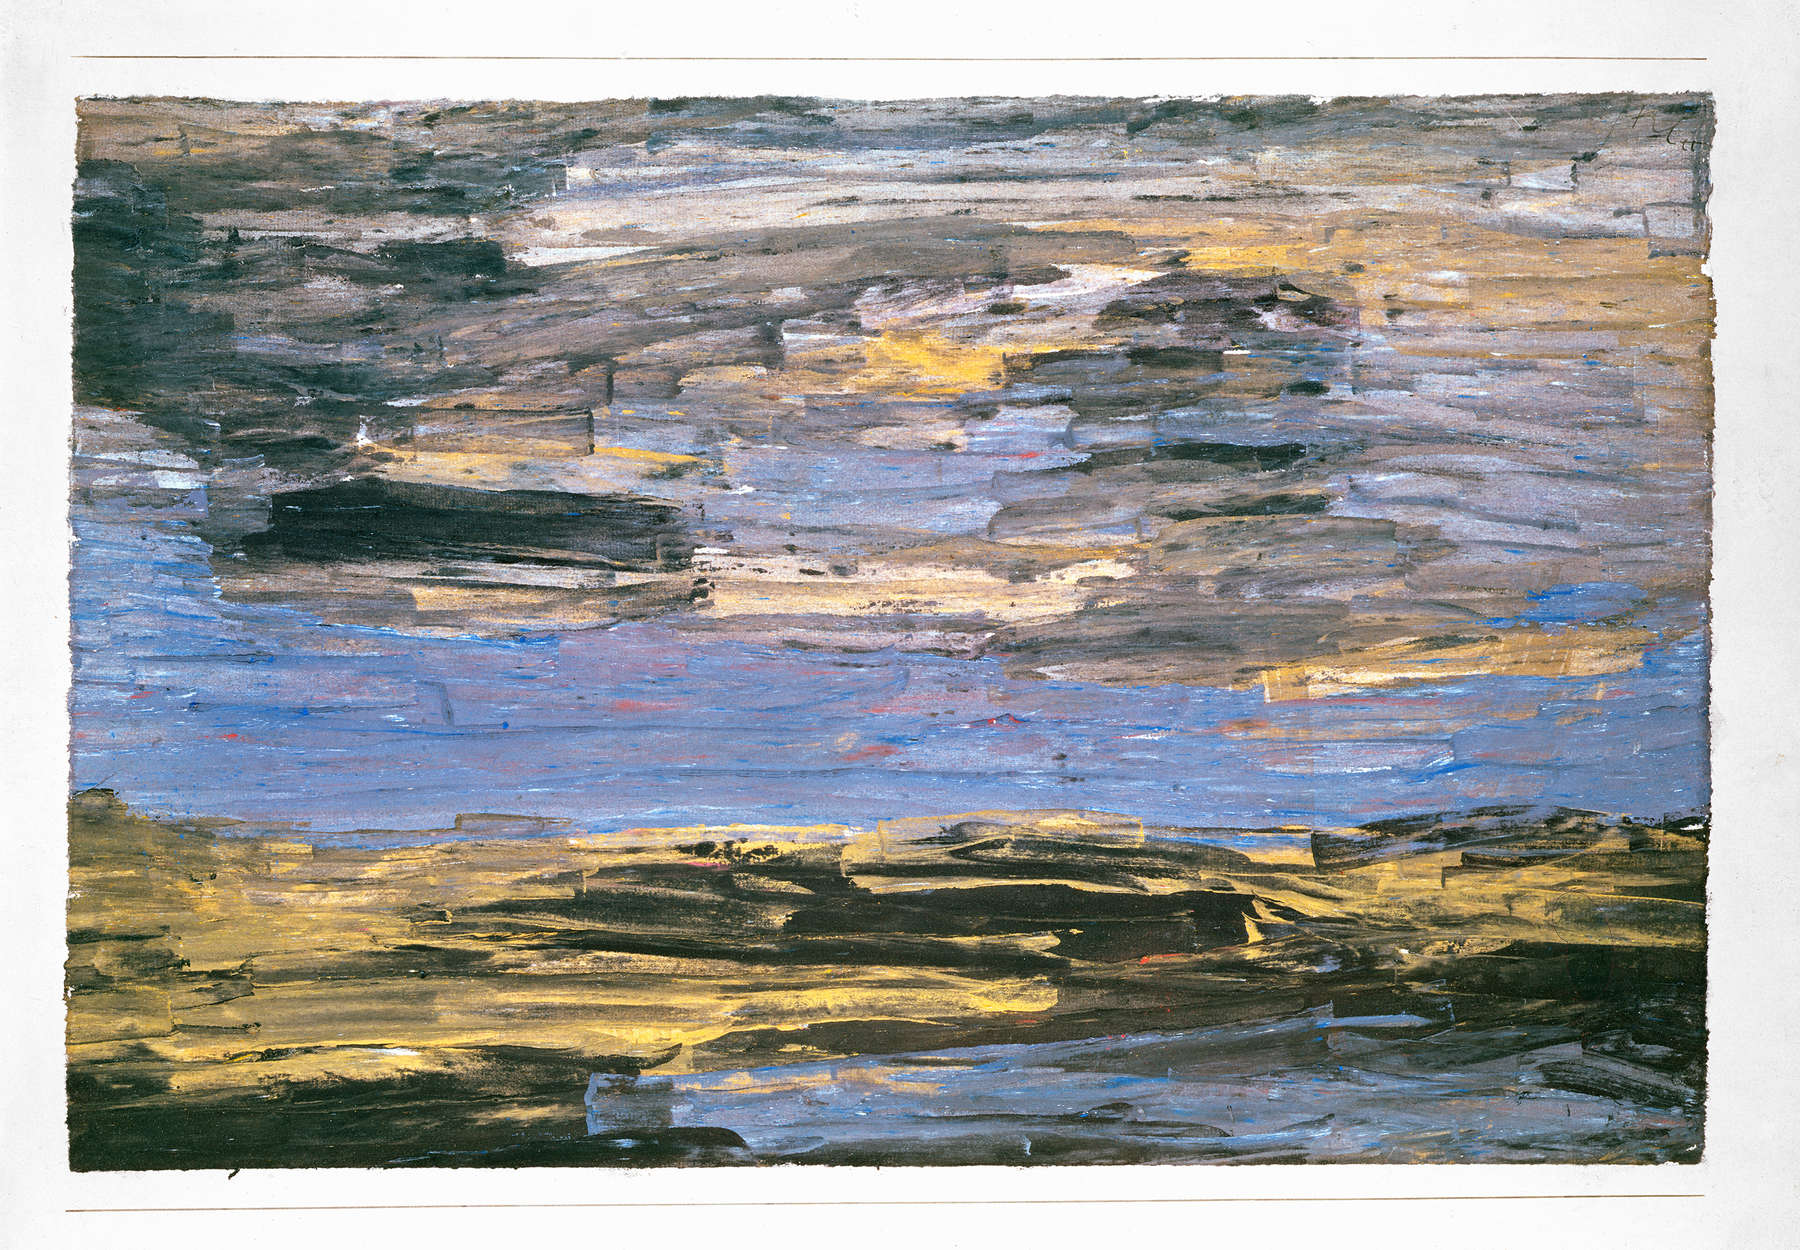             Fototapete "Sturm über der Ebene" von Paul Klee
        